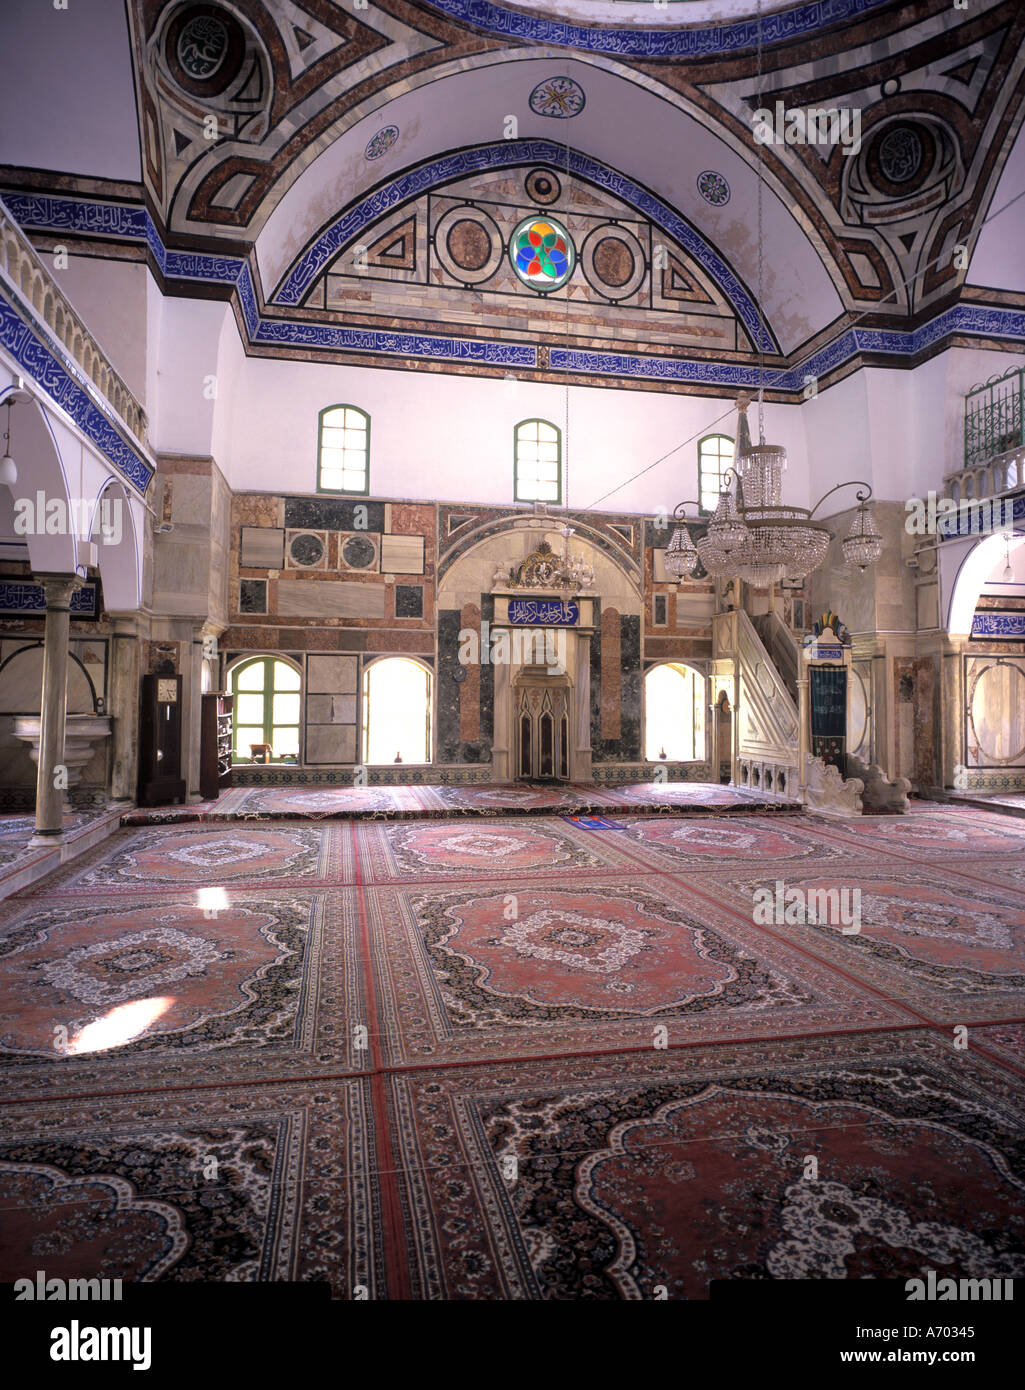 Interior of El Jeazar Mosque at Acre or Akko in Israel Stock Photo